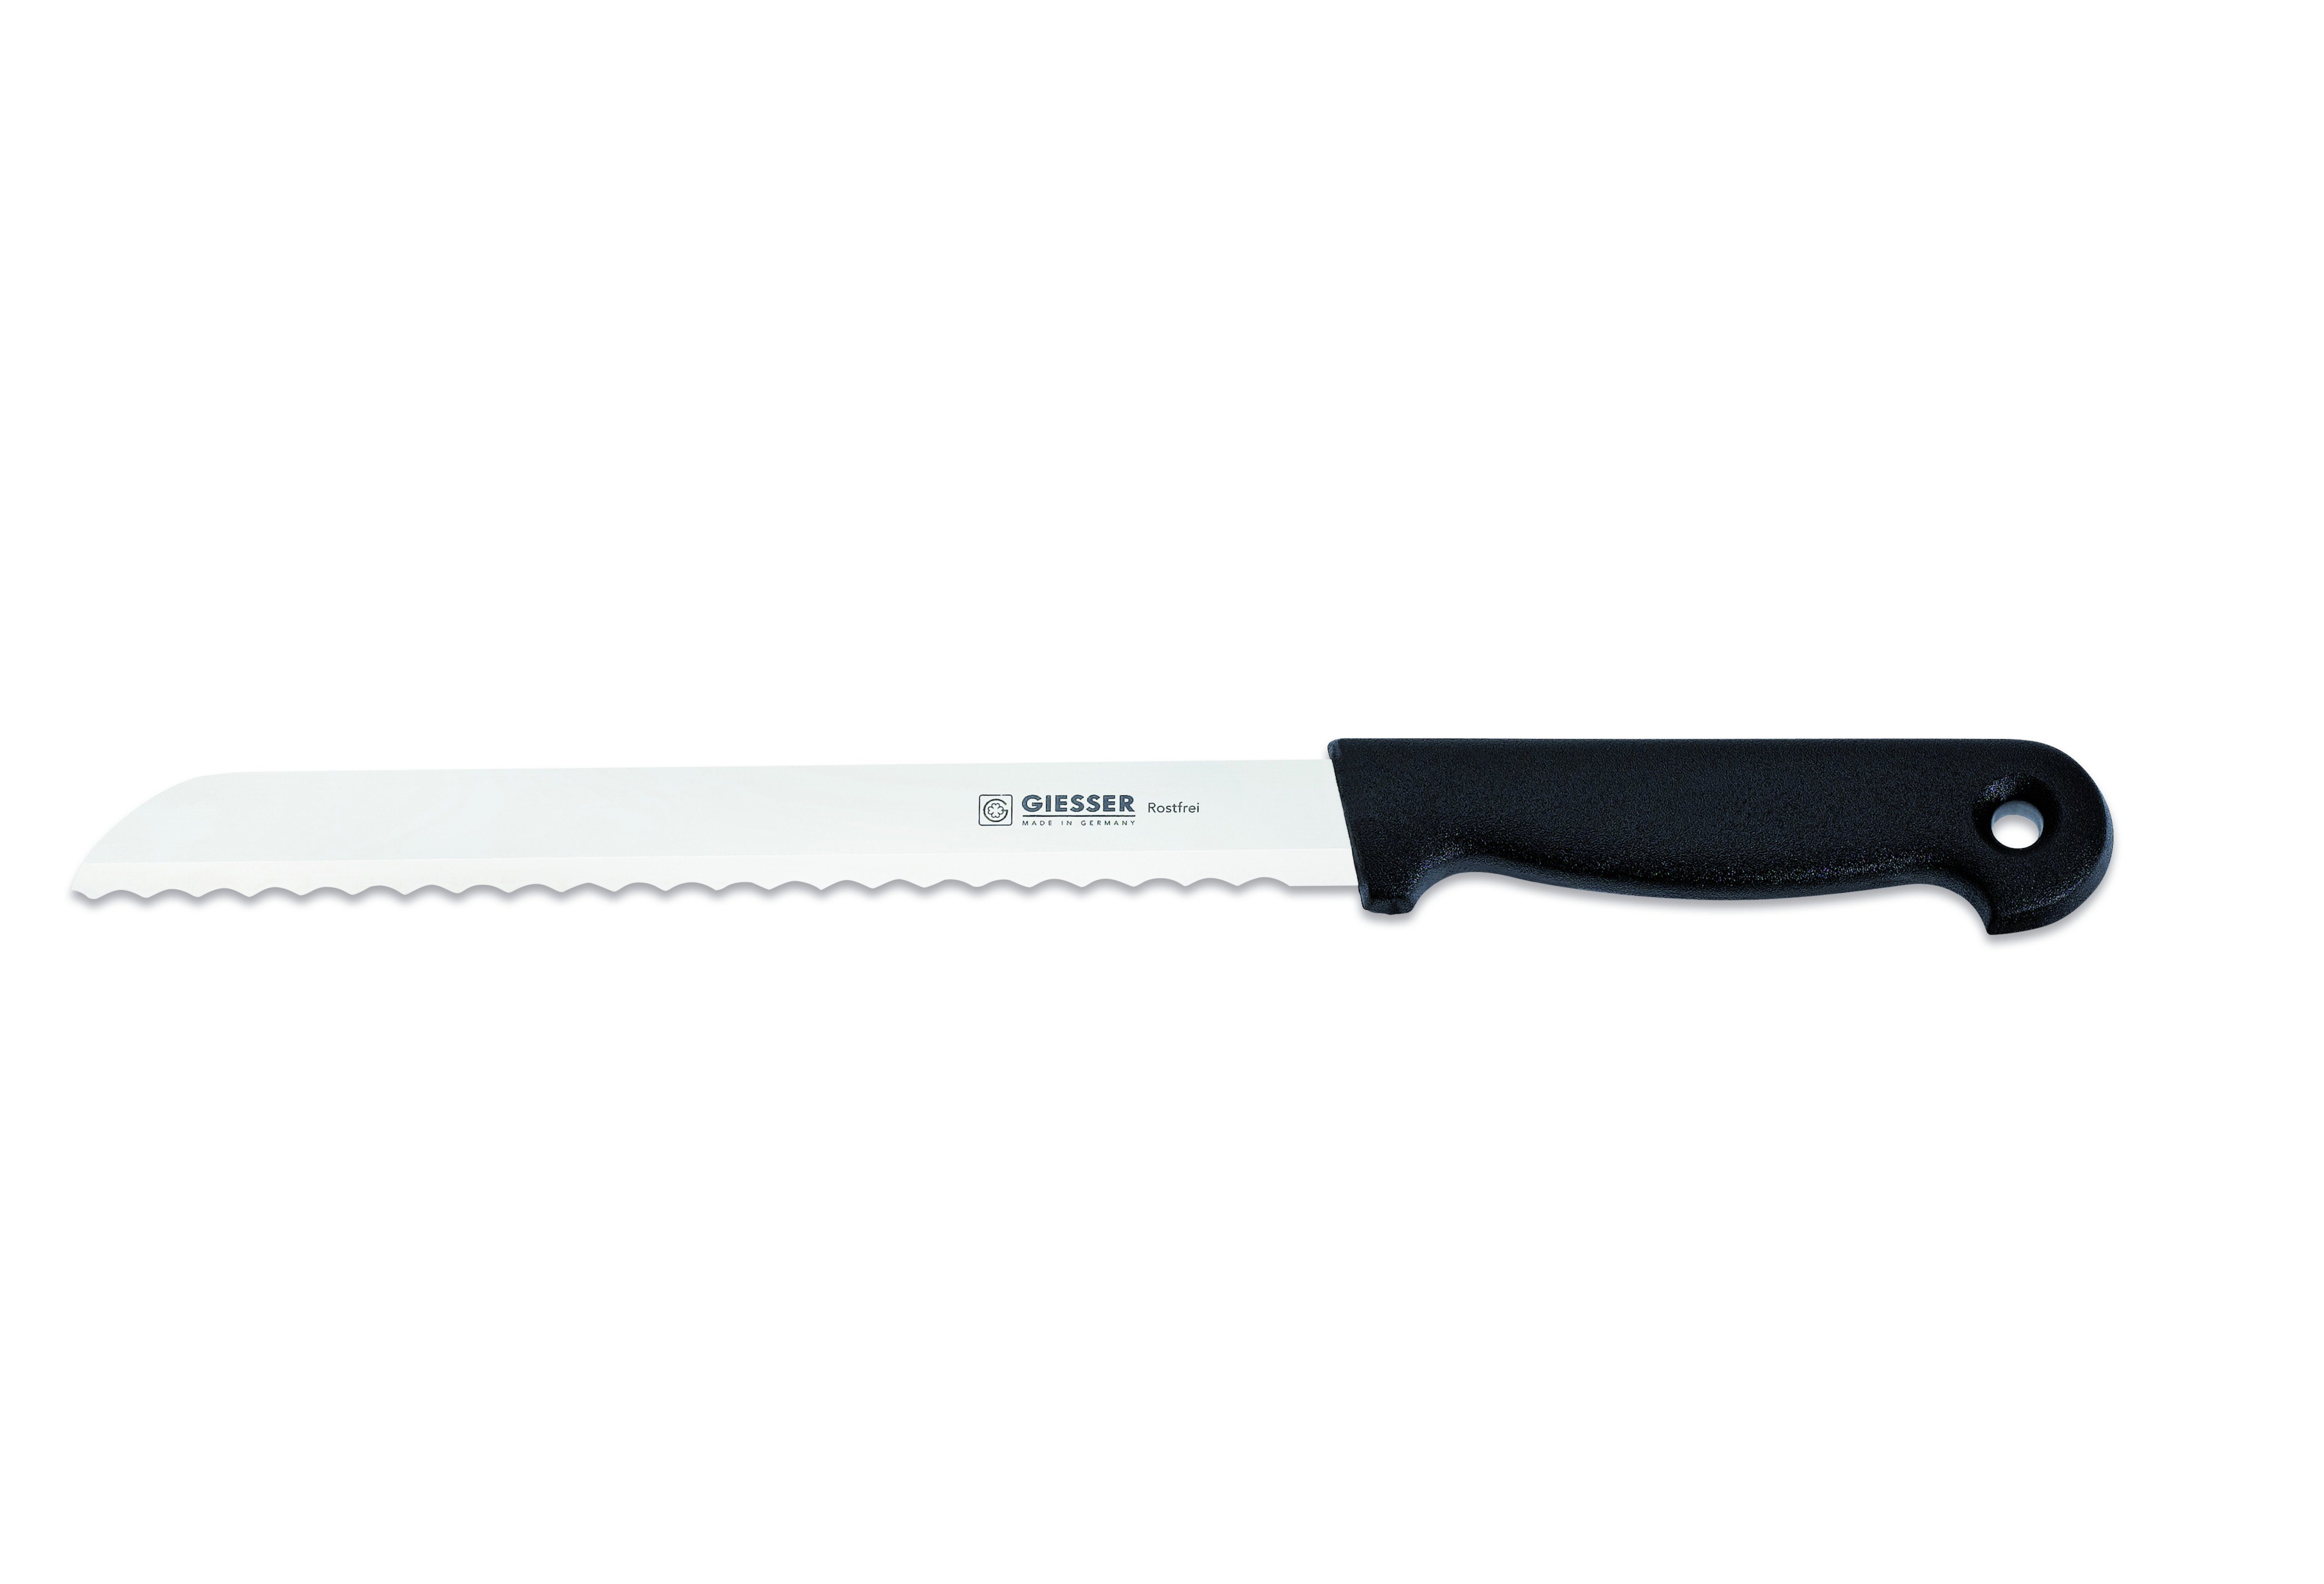 Giesser Messer Brotmesser Konditormesser 8355, Kunststoffgriff, 6 mm Welle, ideal zum Brot schneiden Schwarz